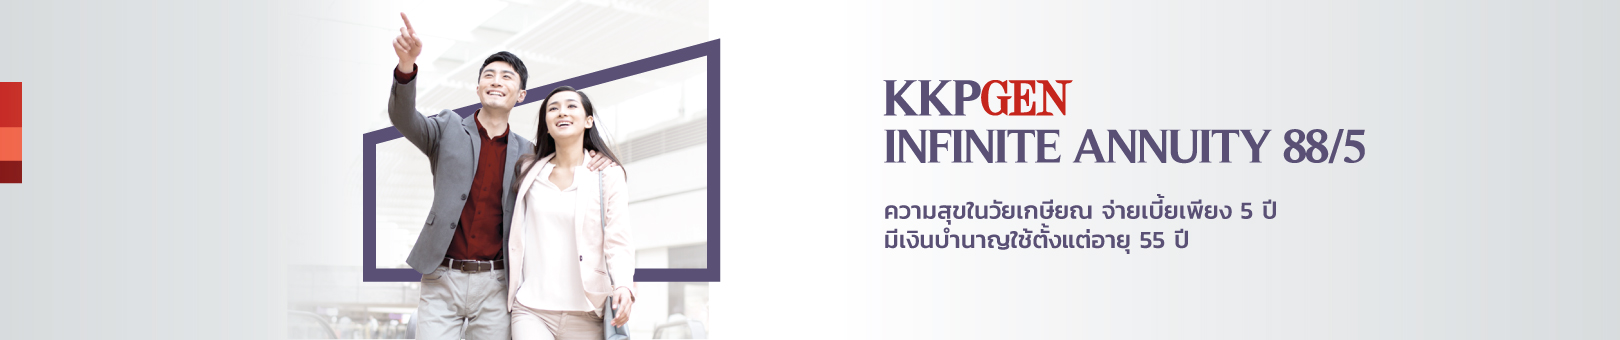 KKPGEN-Infinite-Annuity-88-5-1620x340px